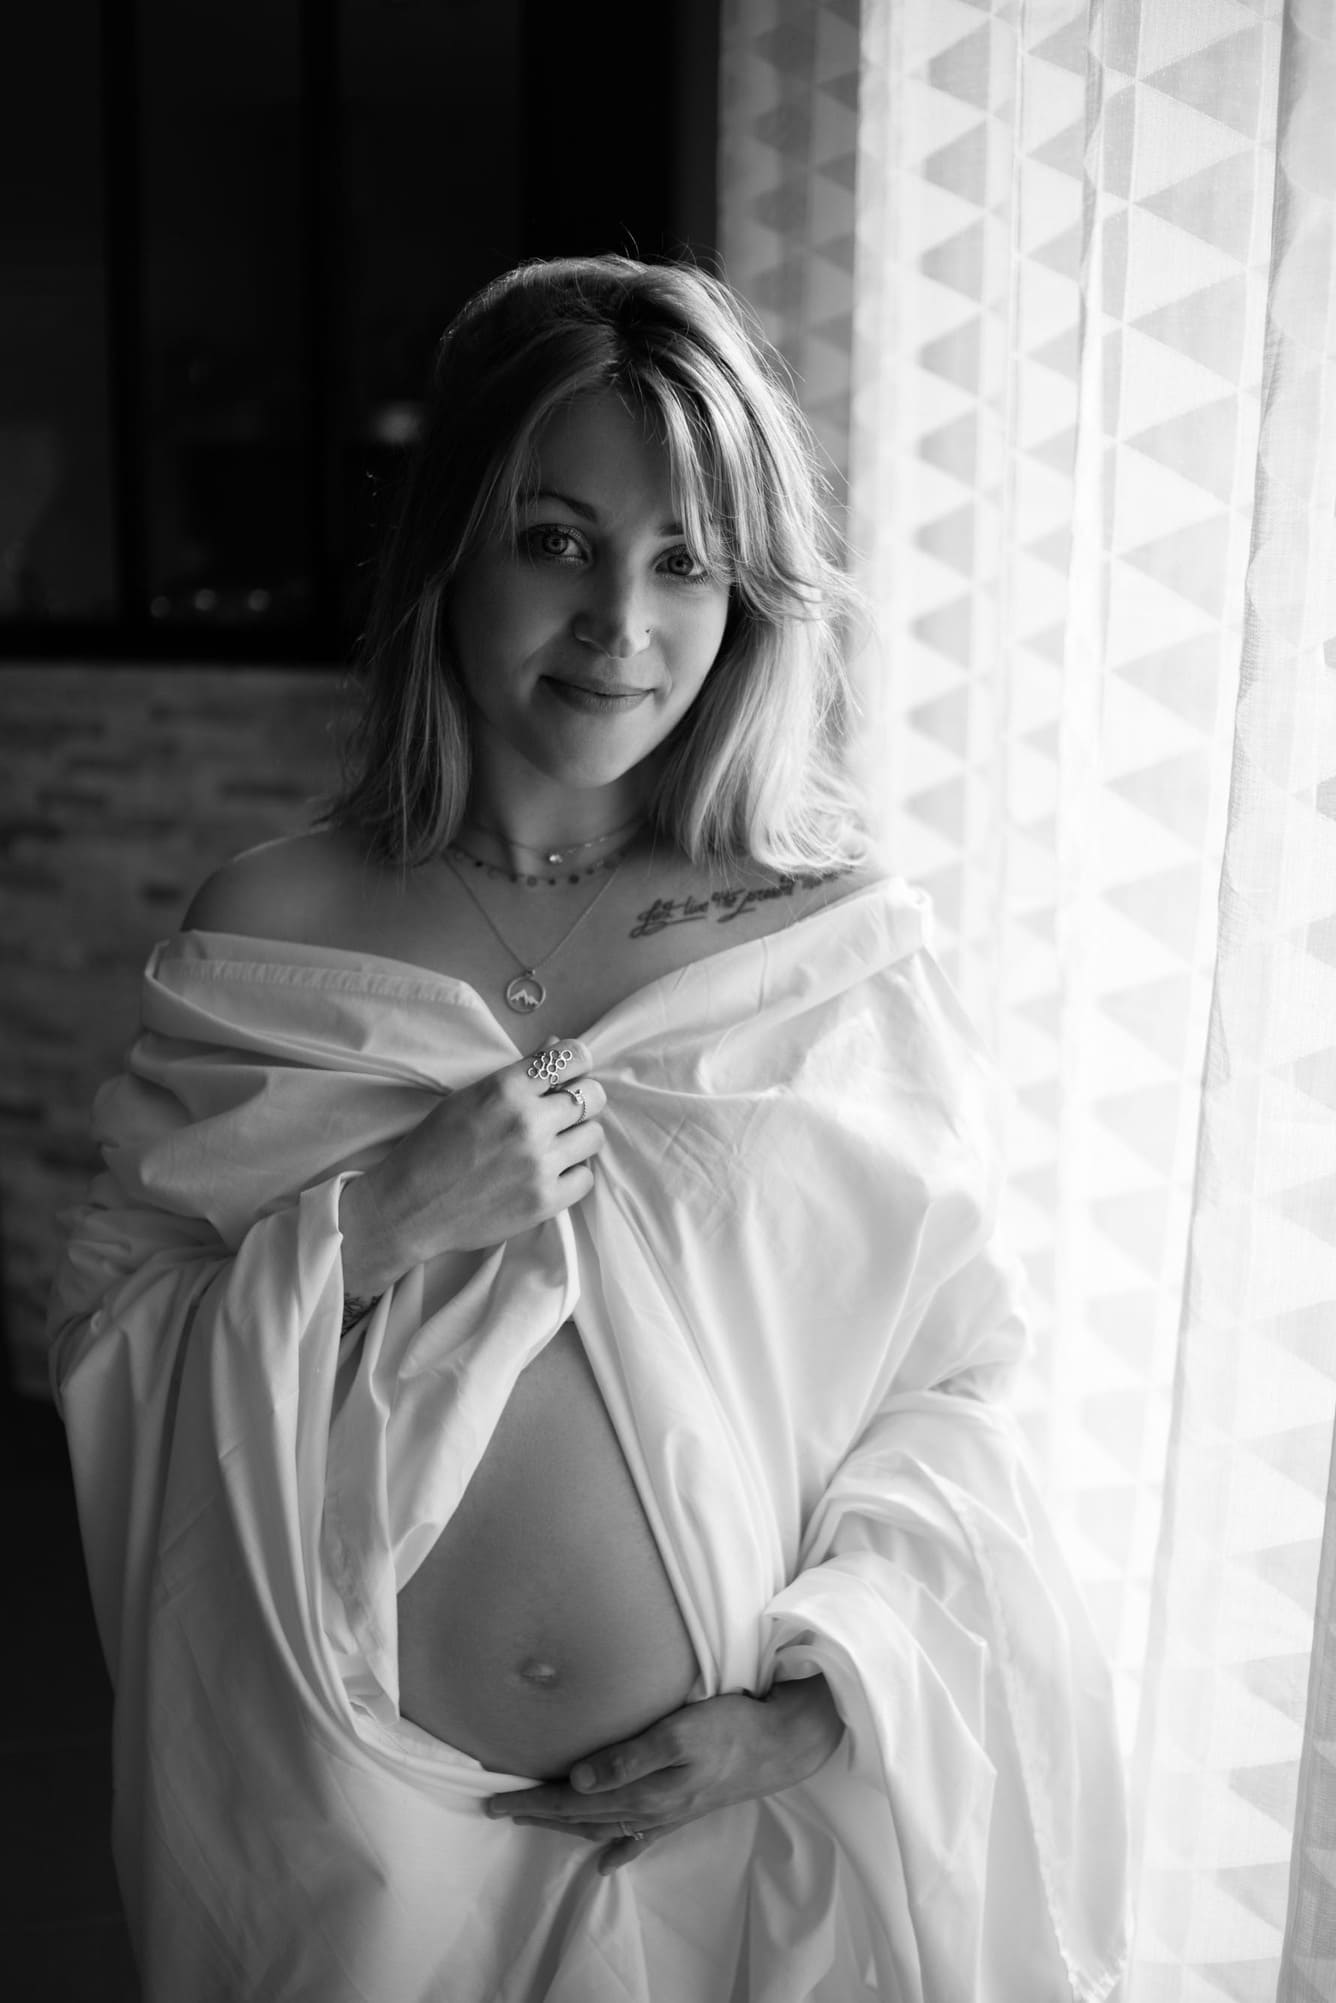 La photo est en noir et banc. On voit une jeune femme vêtue d'une chemise blanche, ouverte sur son ventre rond de femme enceinte.